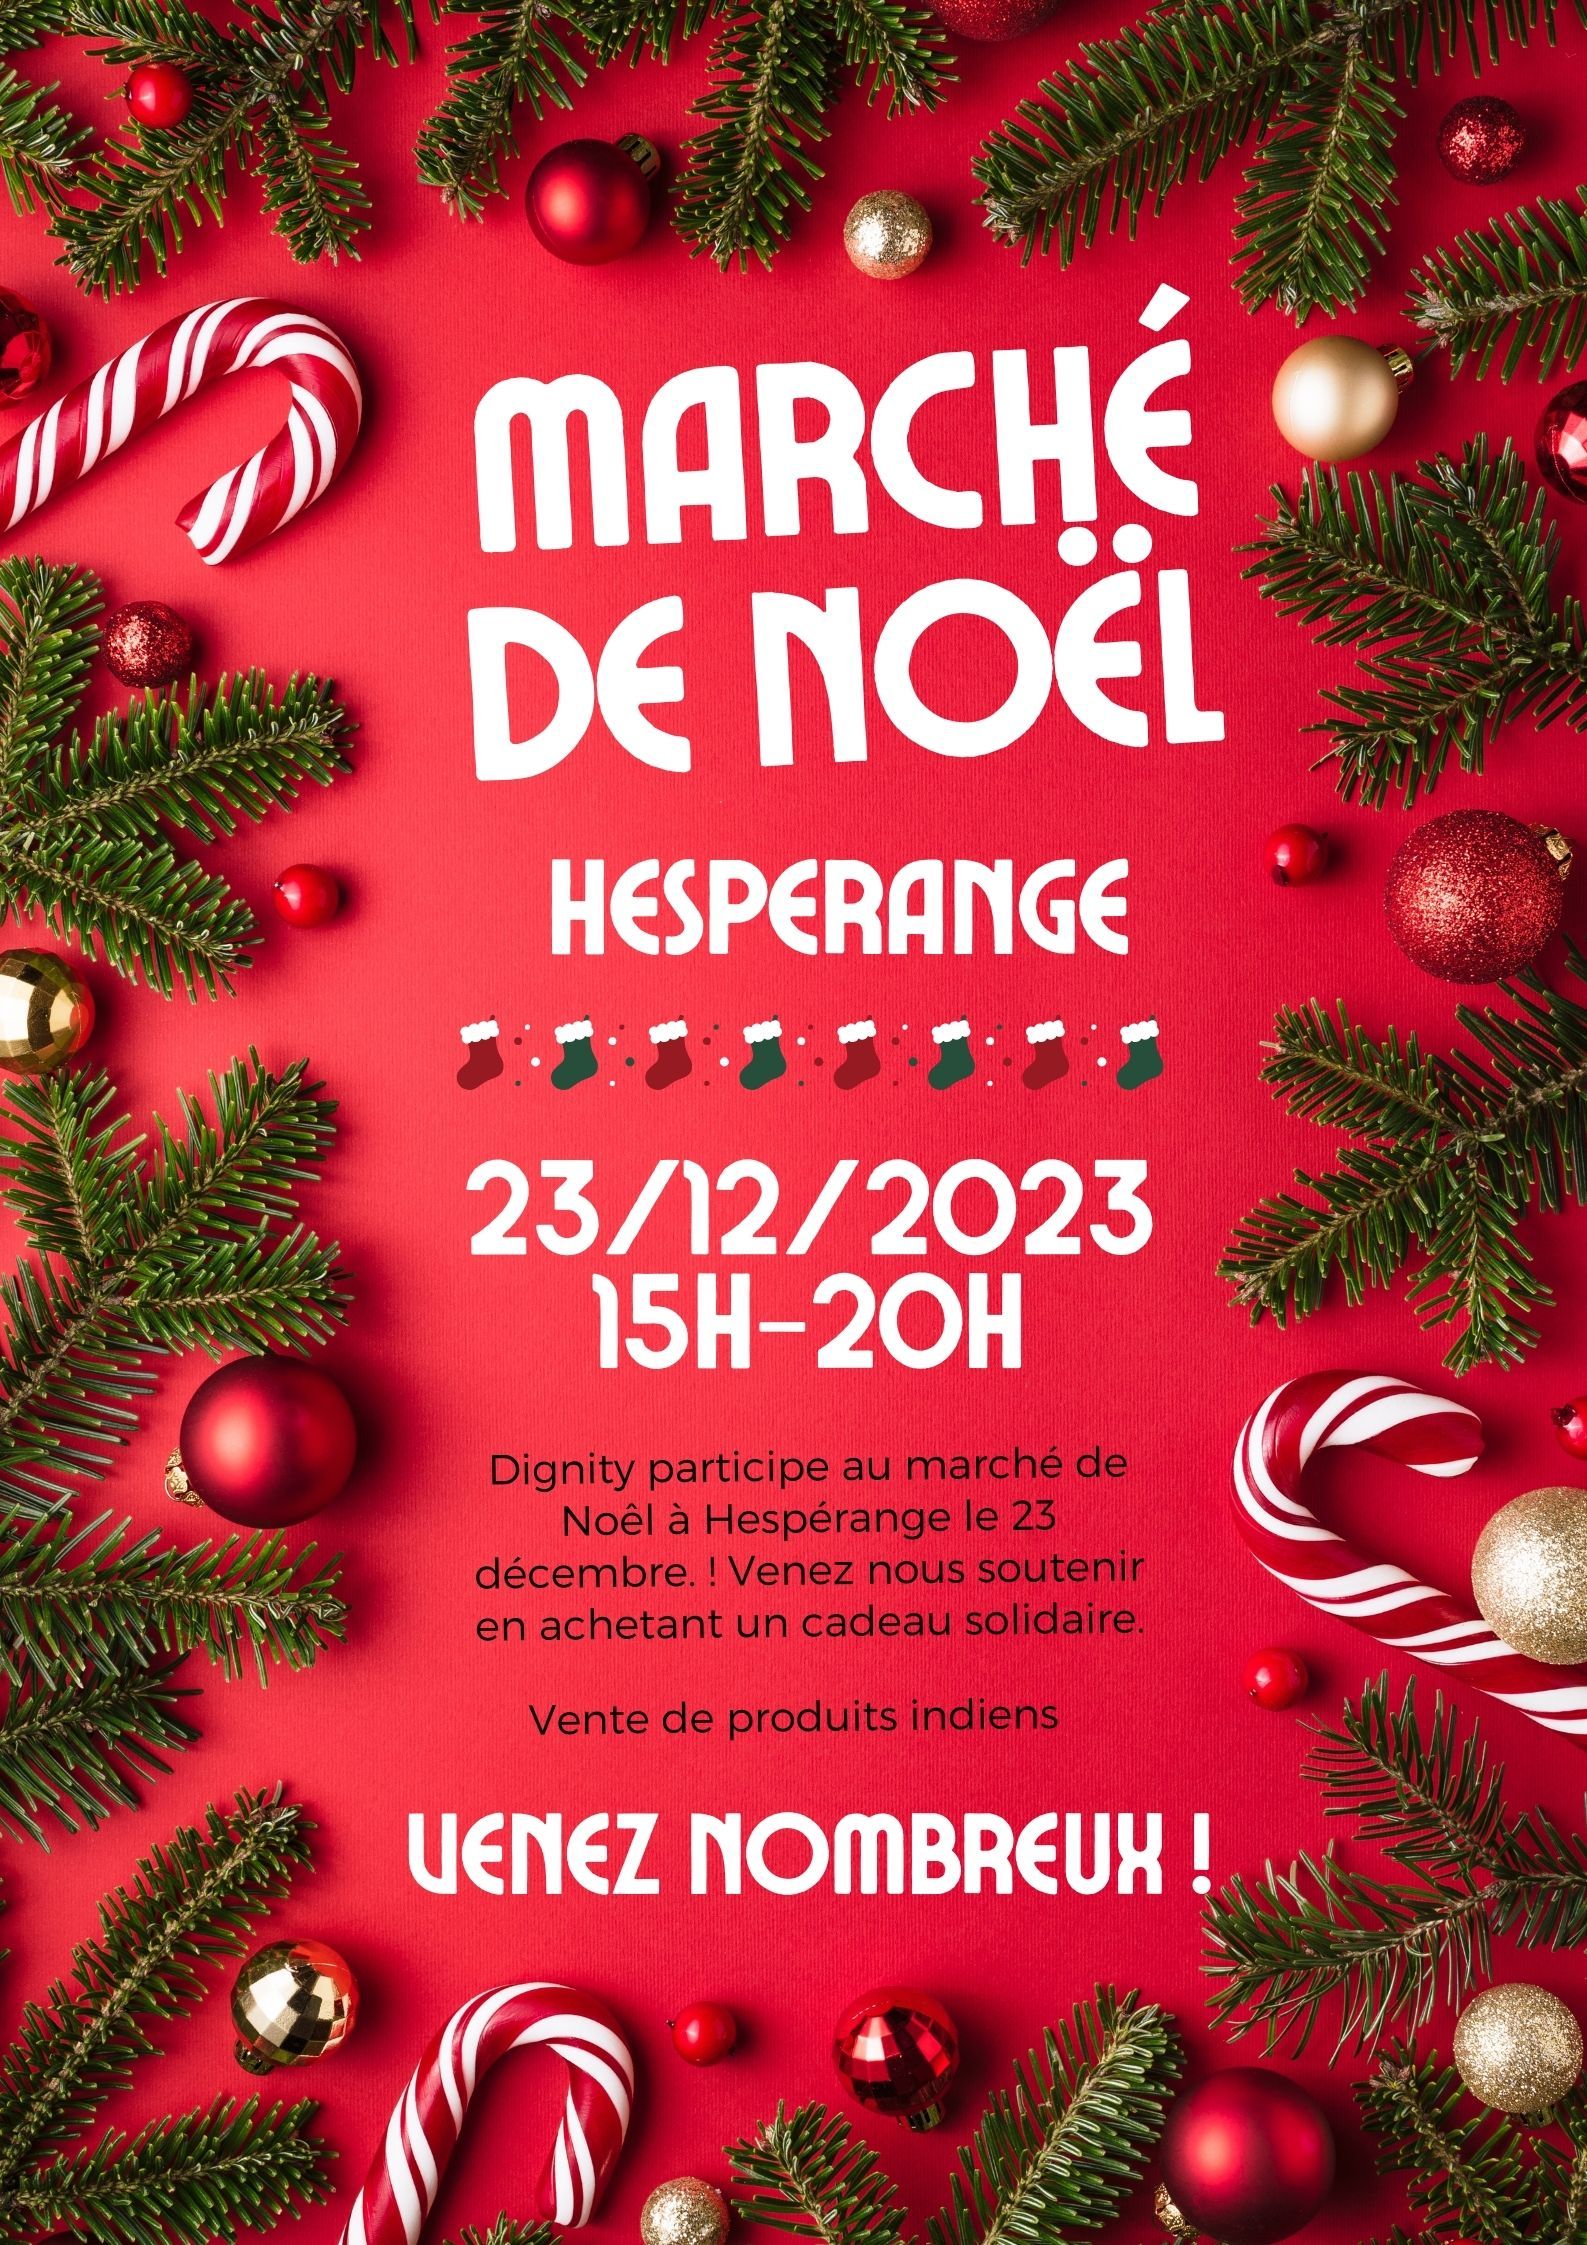 Samedi 23 décembre 2023 - Dignity participe au marché de Noël d’Hesperange.🎄🎄
Venez nous voir à notre stand !